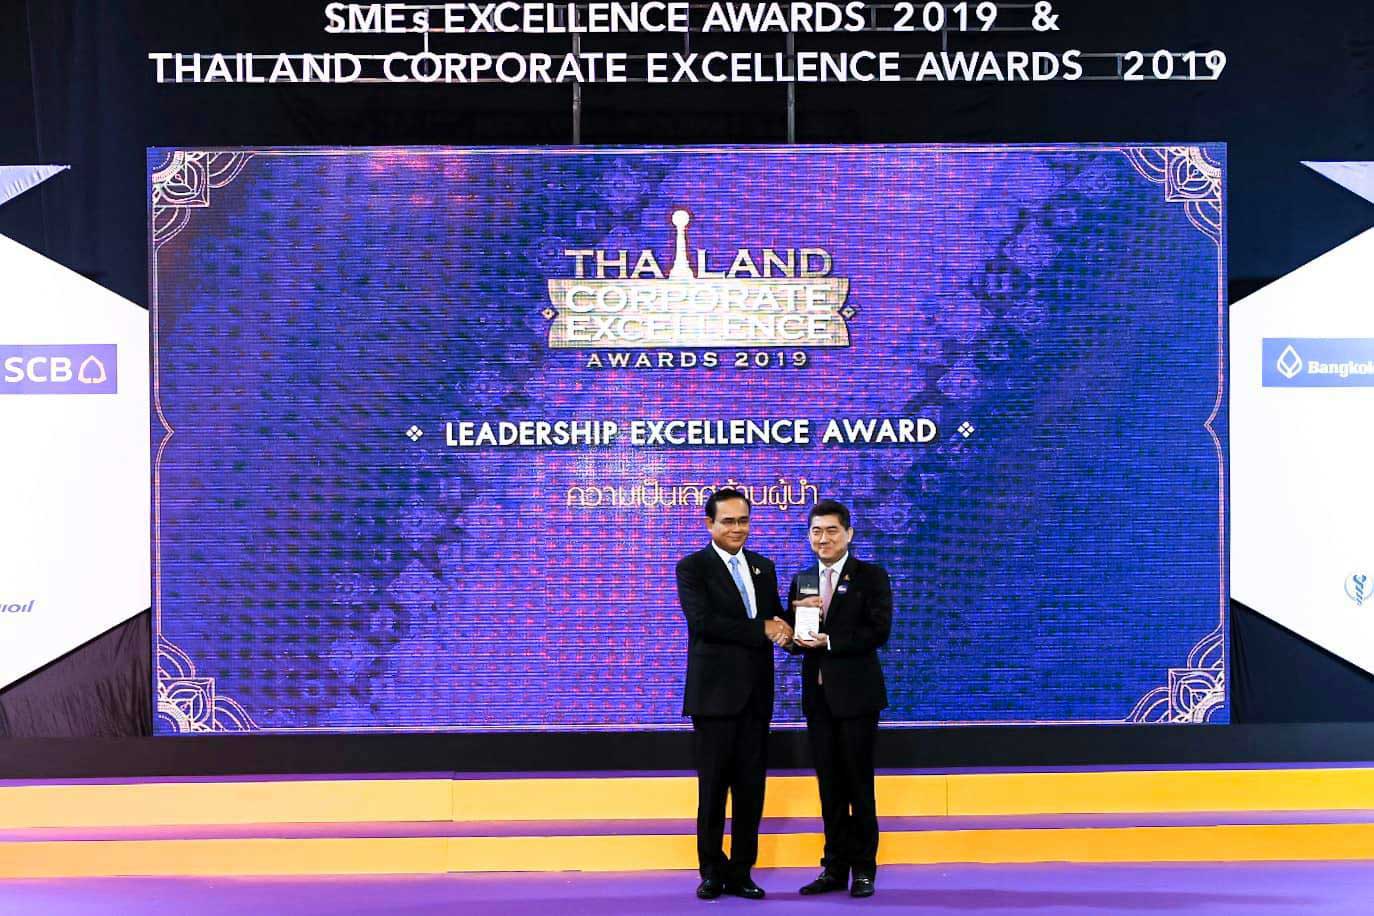 นายกรัฐมนตรี มอบรางวัลความเป็นเลิศด้านผู้นำแก่ ซีพีเอฟ งาน Thailand Corporate Excellence Awards 2019